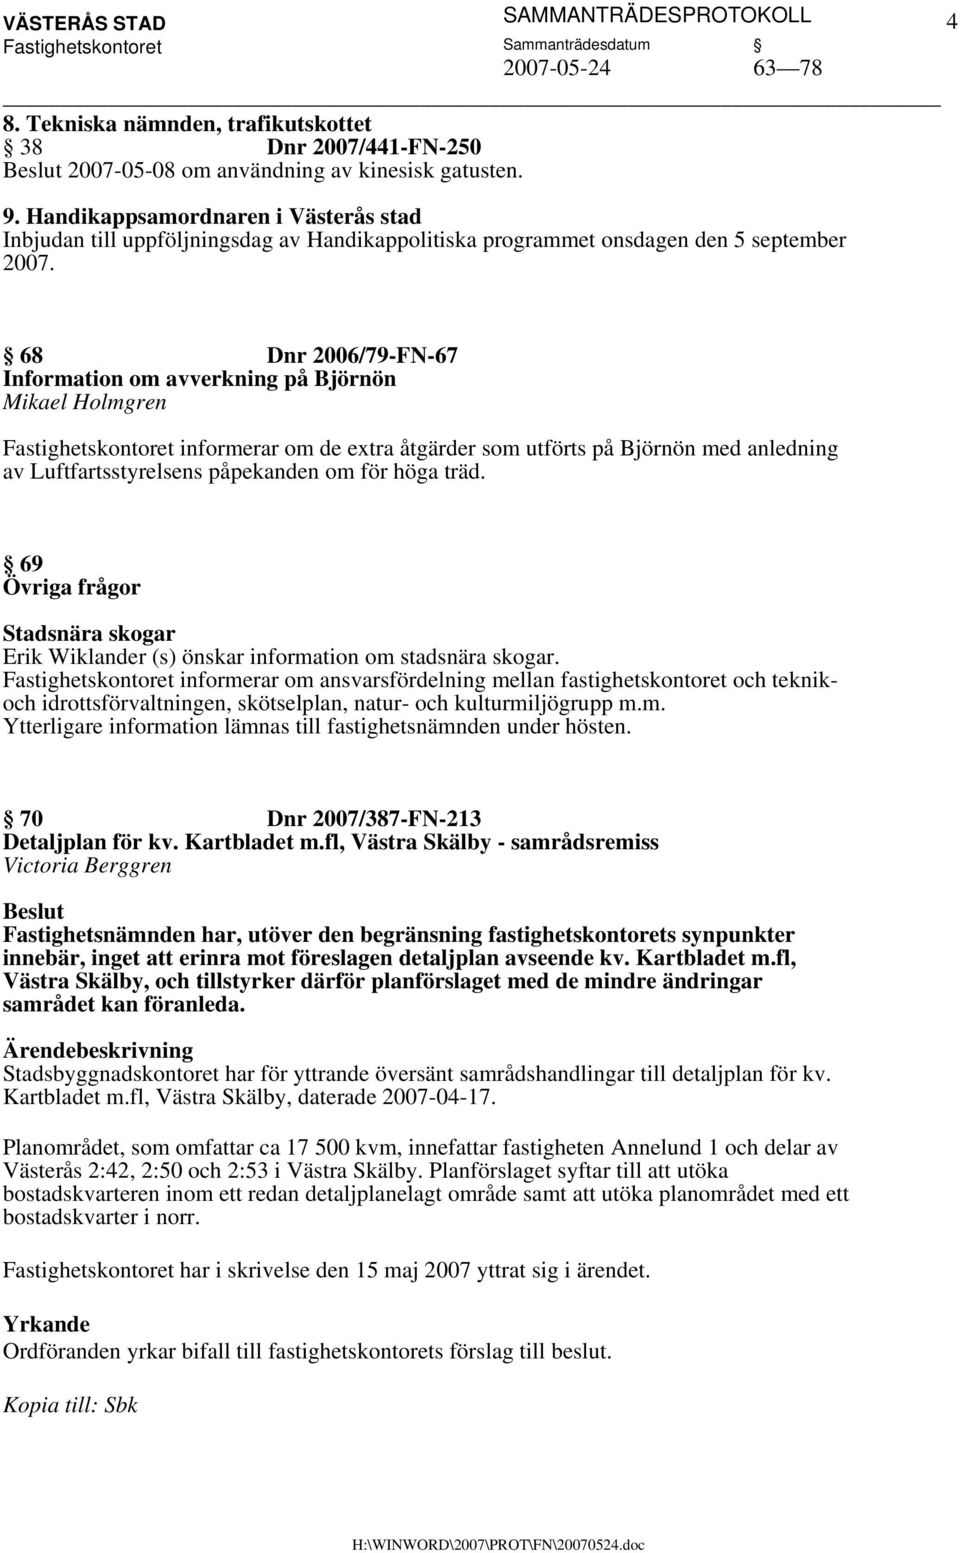 68 Dnr 2006/79-FN-67 Information om avverkning på Björnön Mikael Holmgren informerar om de extra åtgärder som utförts på Björnön med anledning av Luftfartsstyrelsens påpekanden om för höga träd.